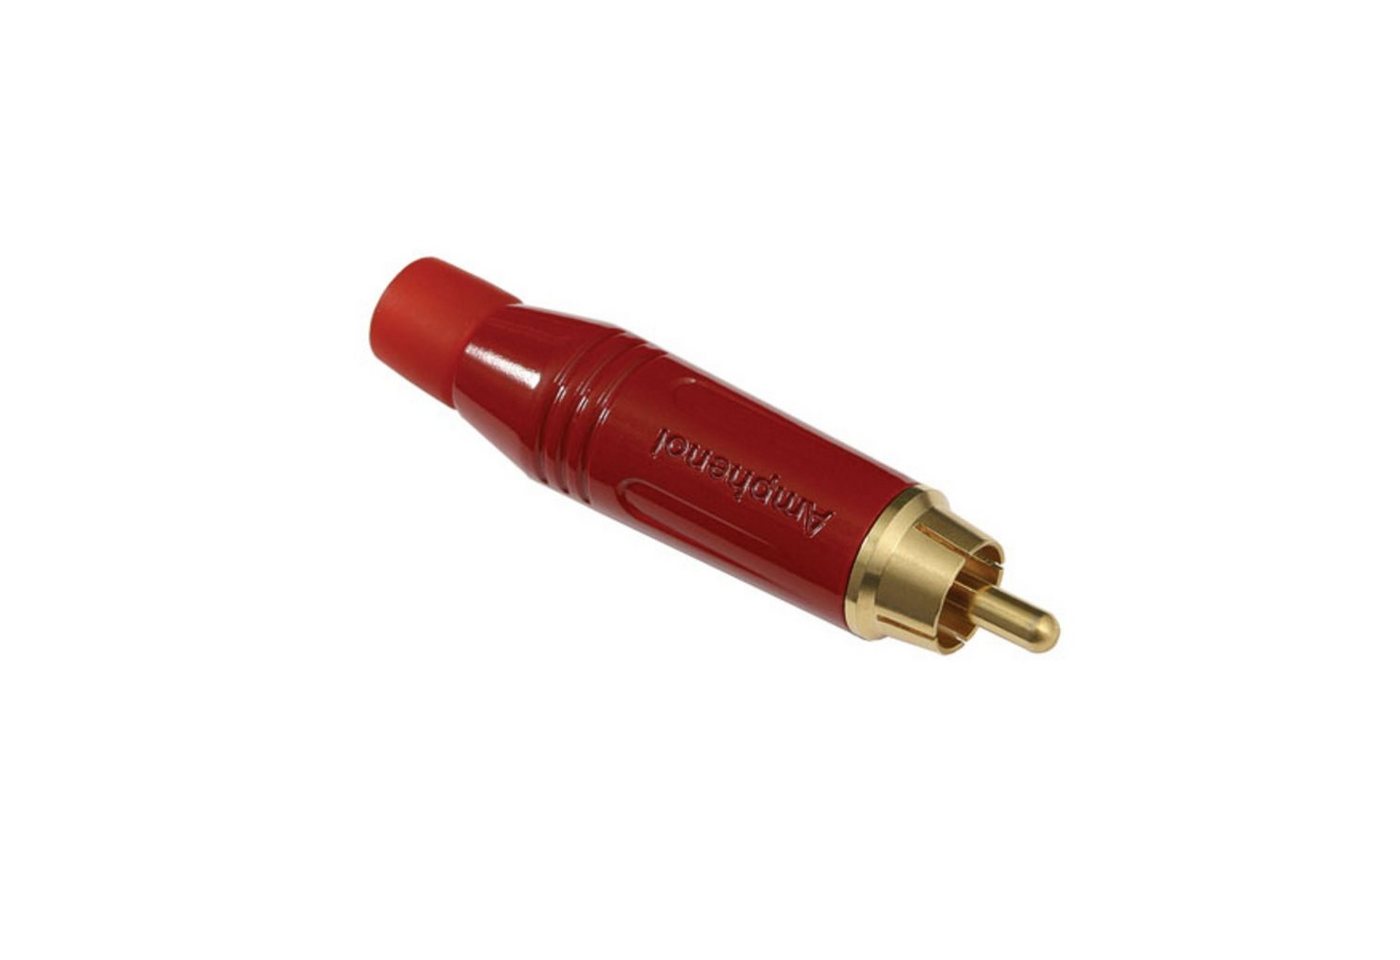 Amphenol Cinch-Stecker, (Stecker & Adapter, Kabel-Stecker), ACPR-RED Cinchstecker rot - Kabel Stecker von Amphenol